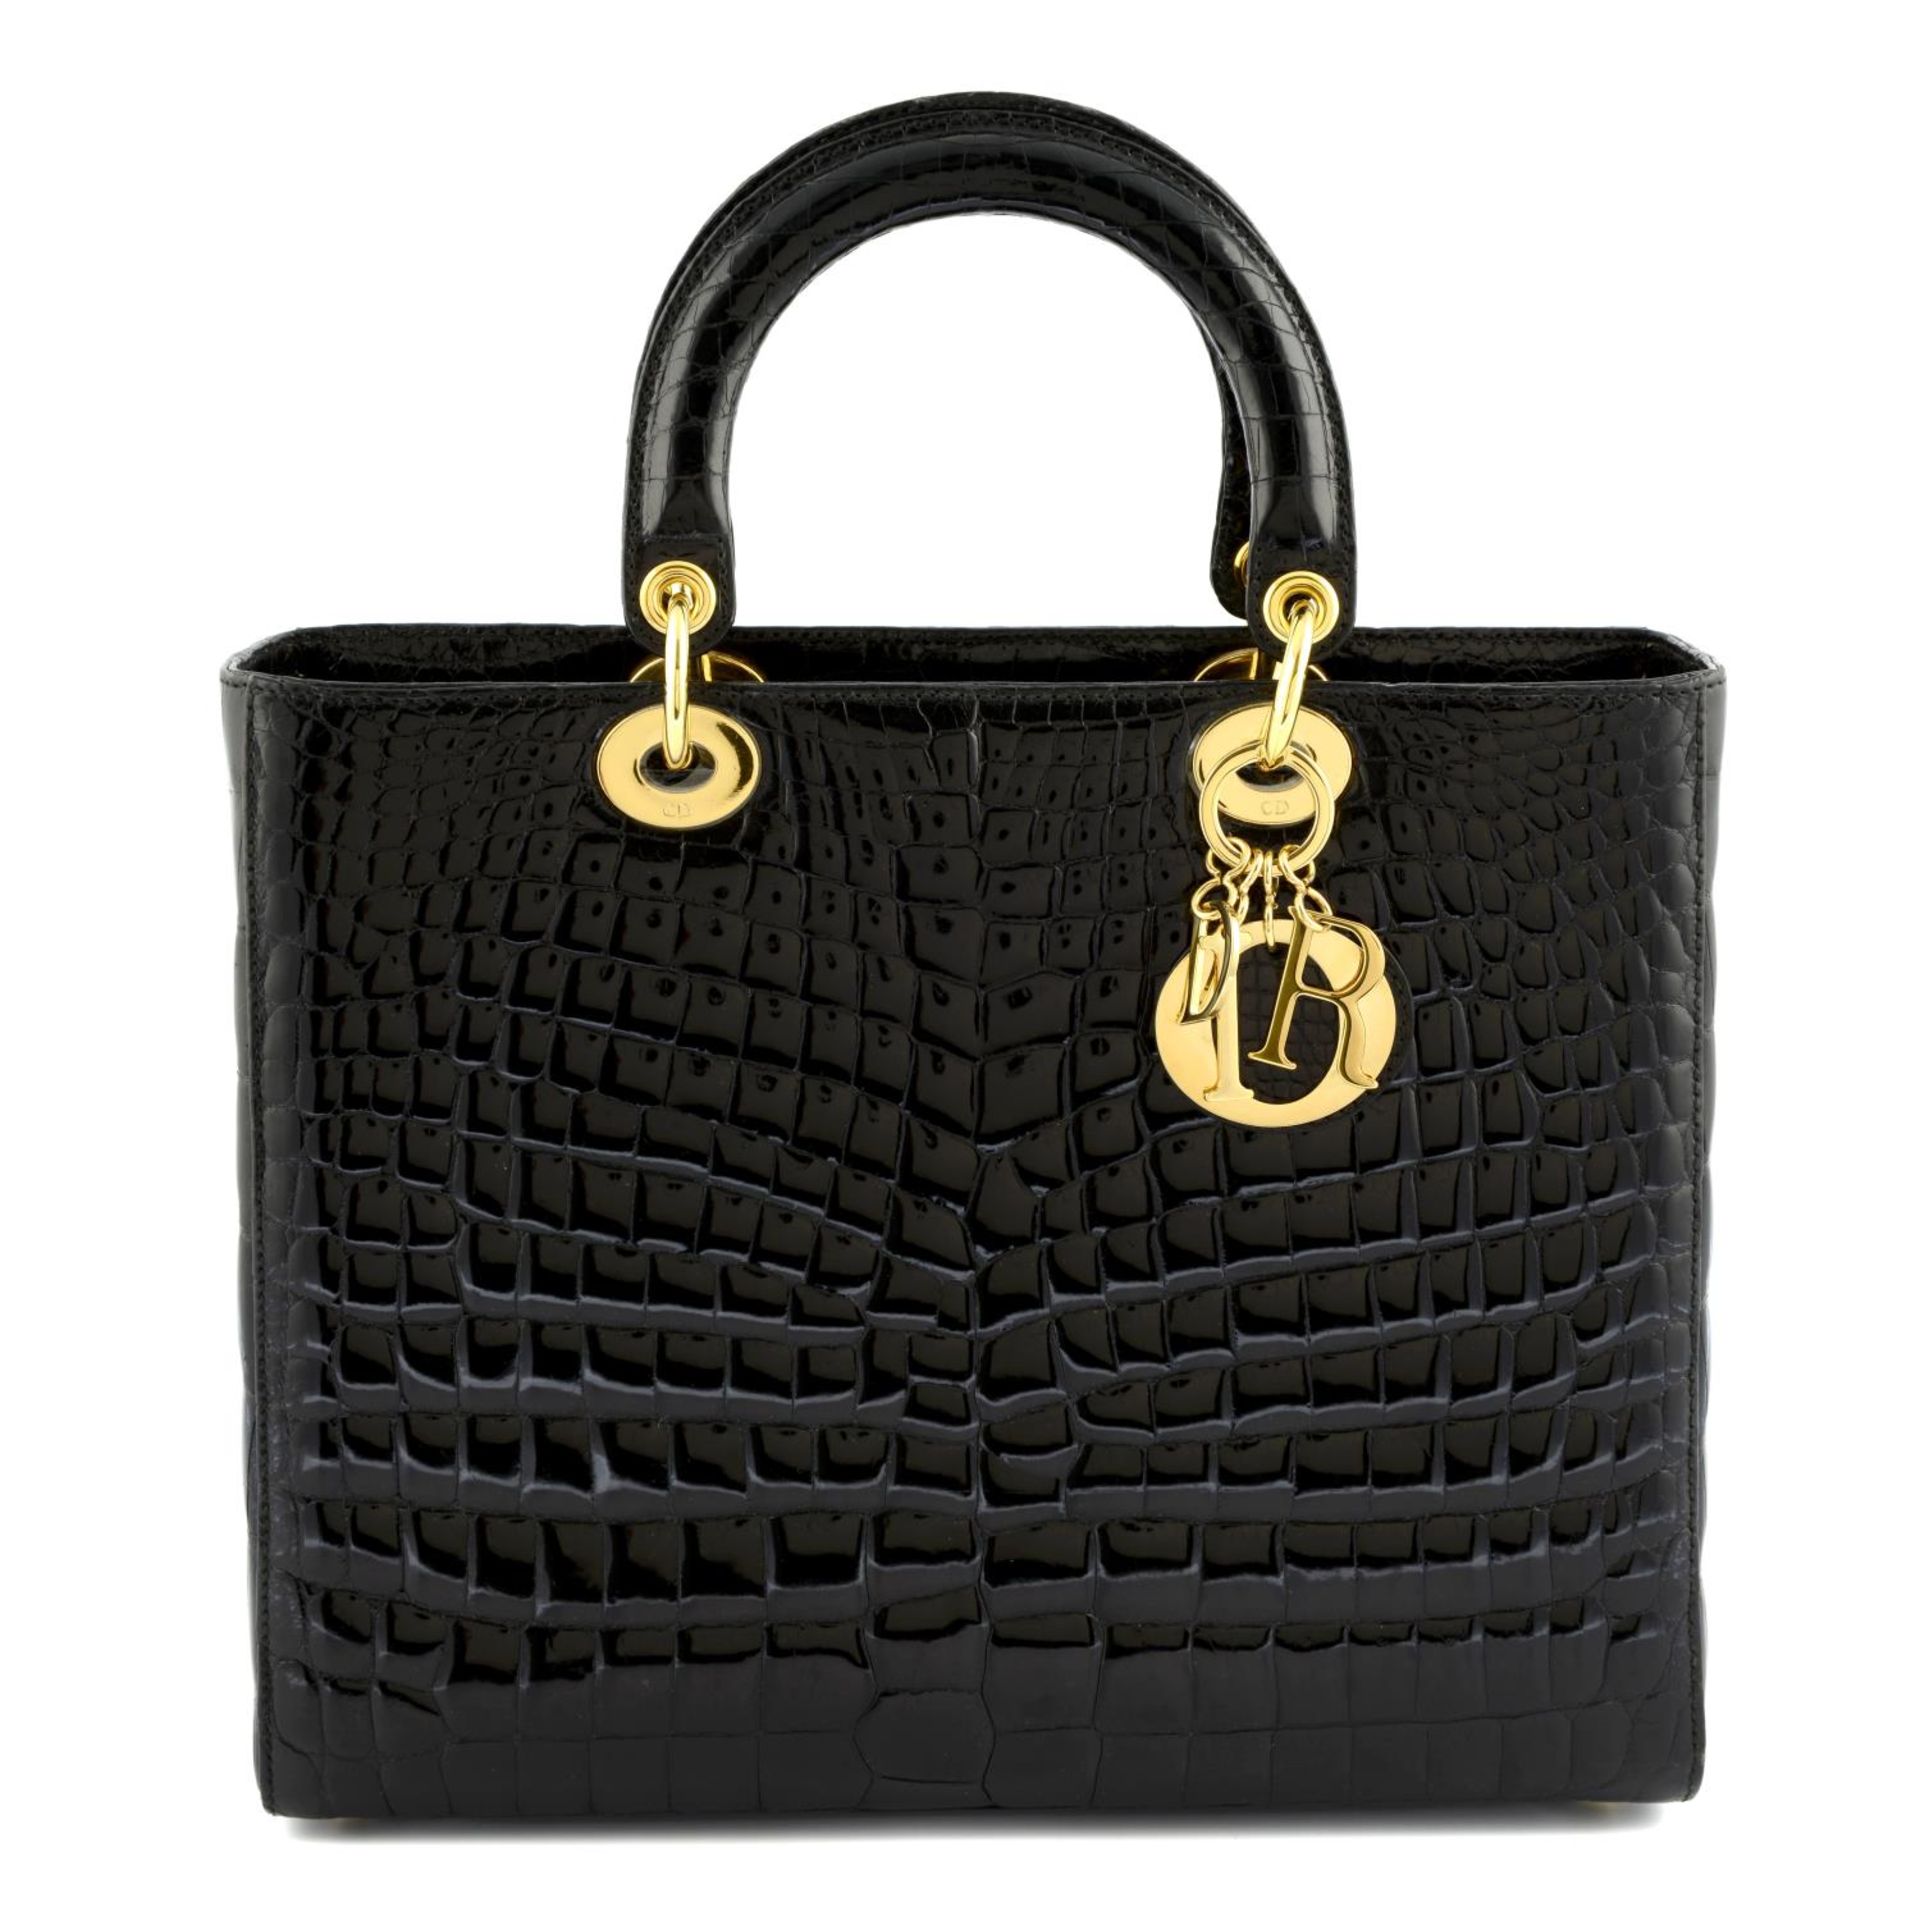 CHRISTIAN DIOR - a black crocodile Lady Dior handbag.